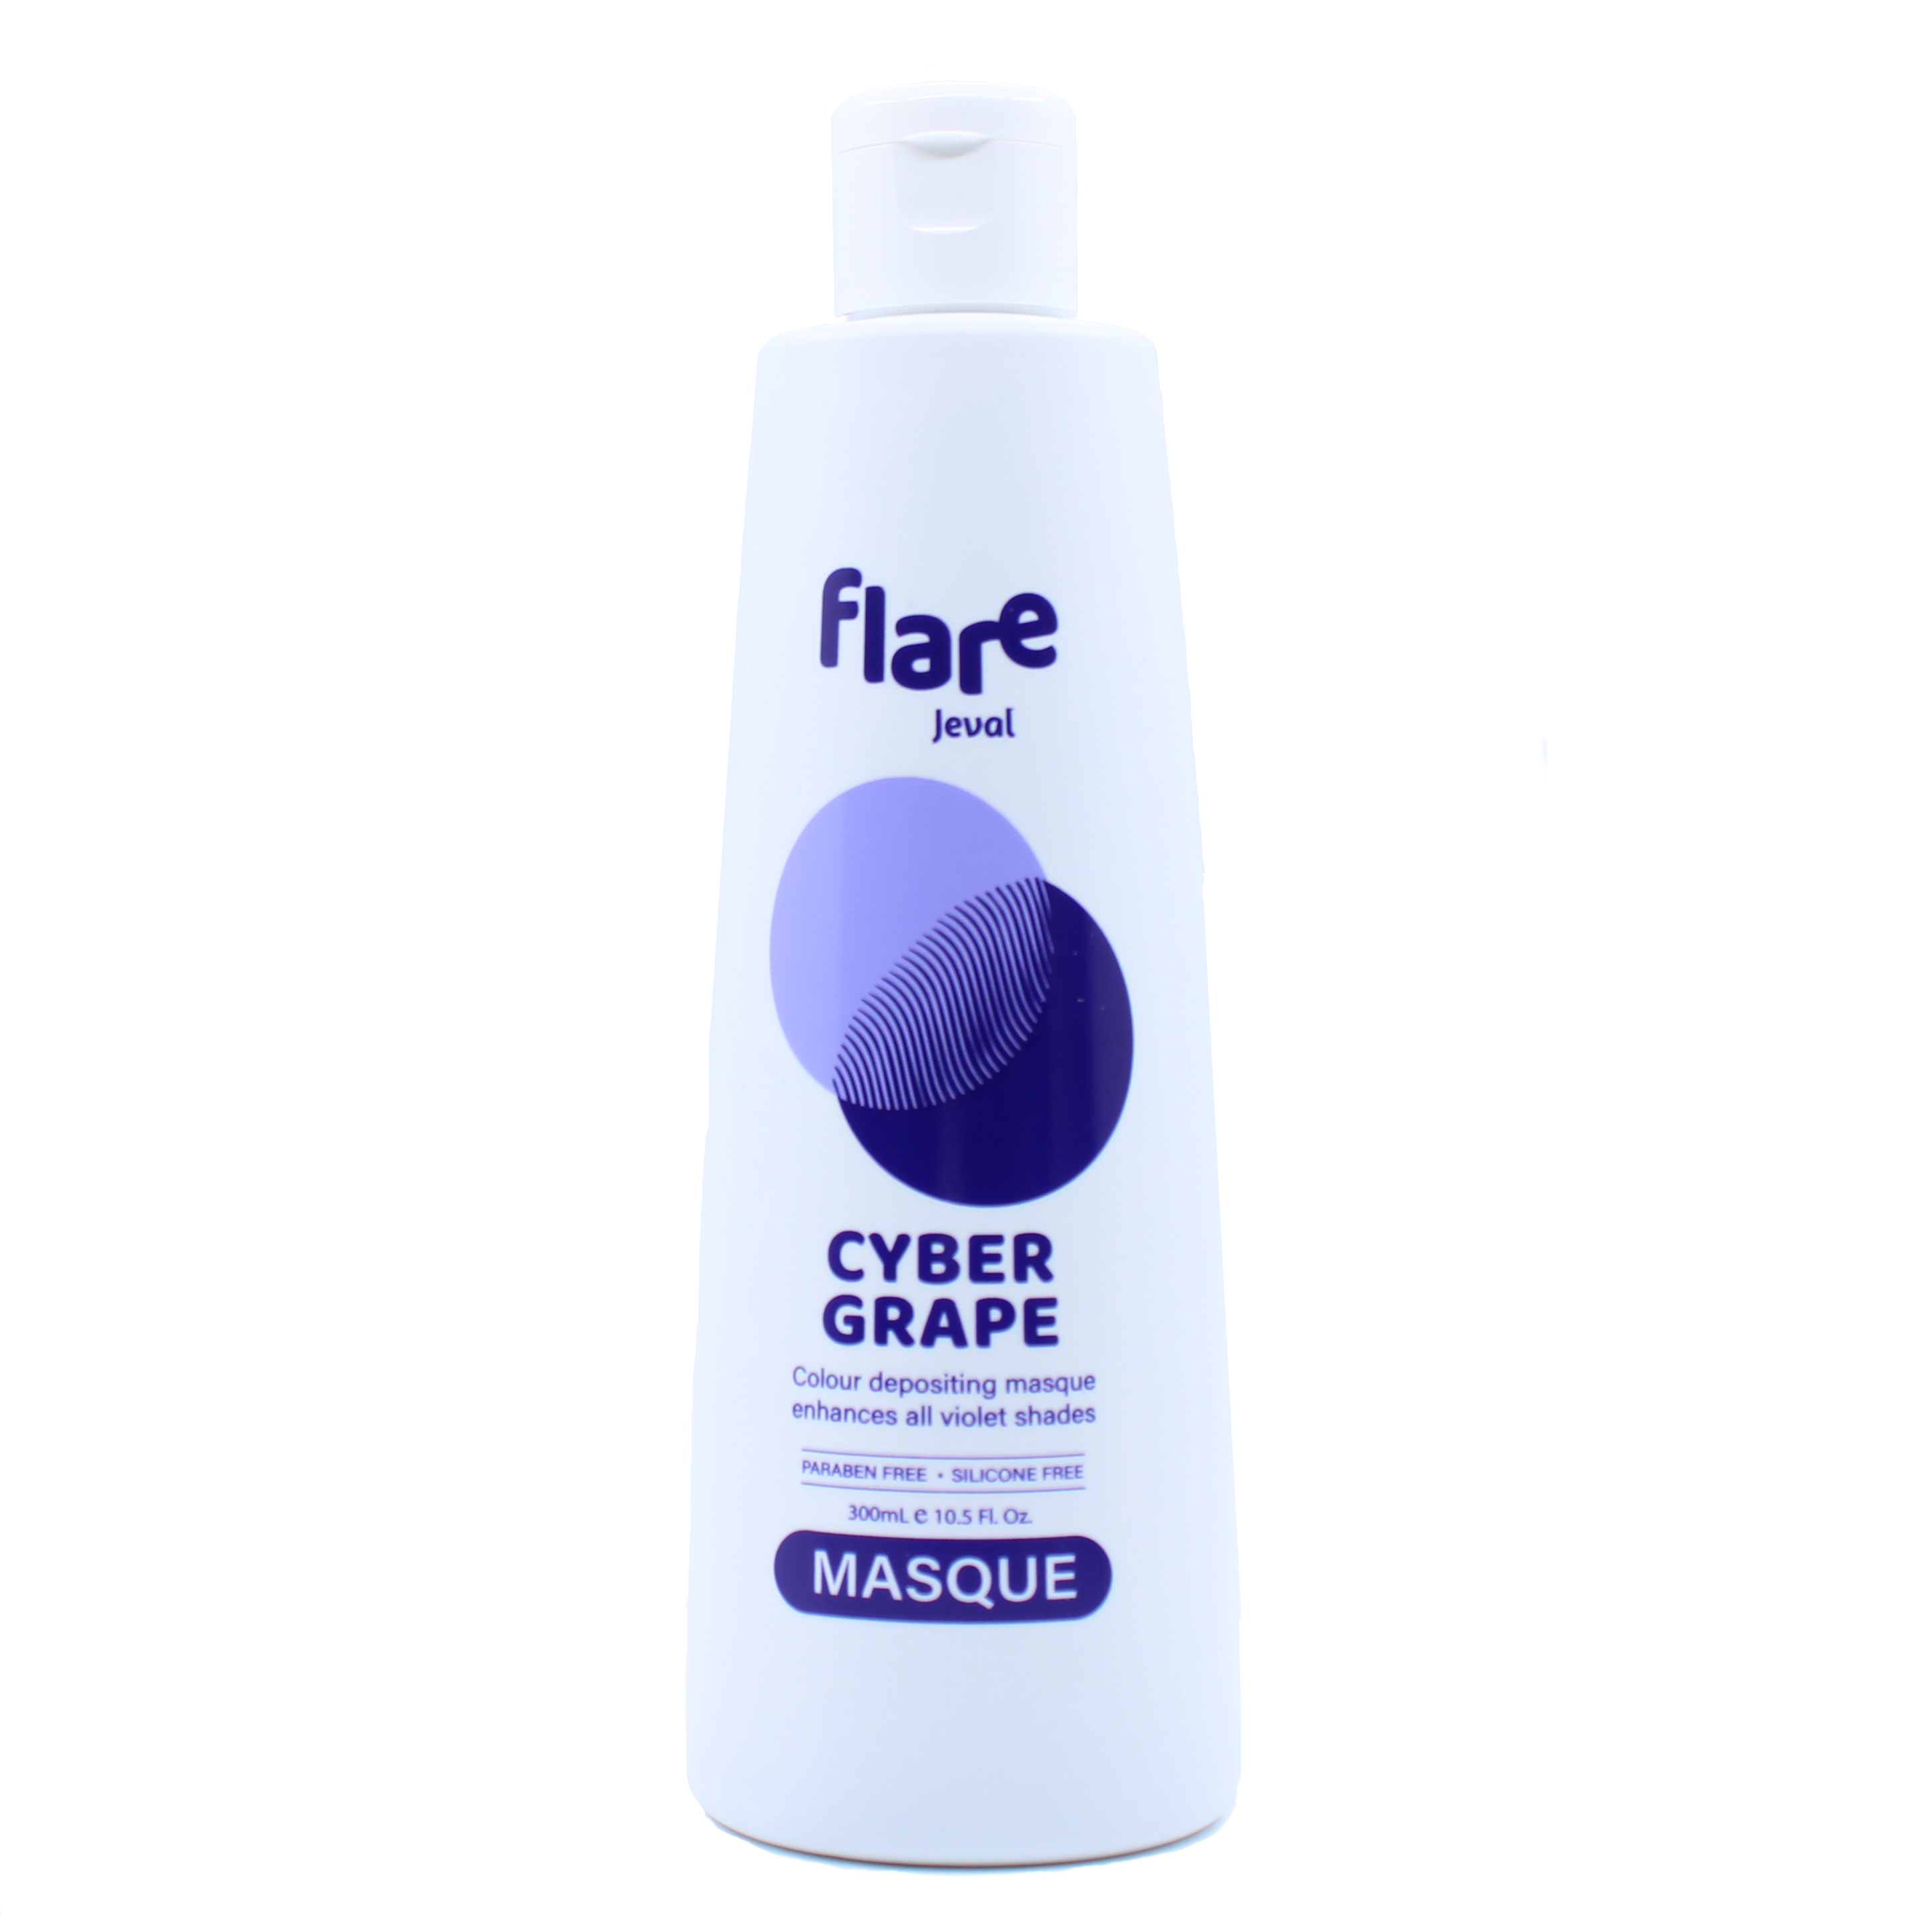 Flare Cyber Grape Masque 300ml